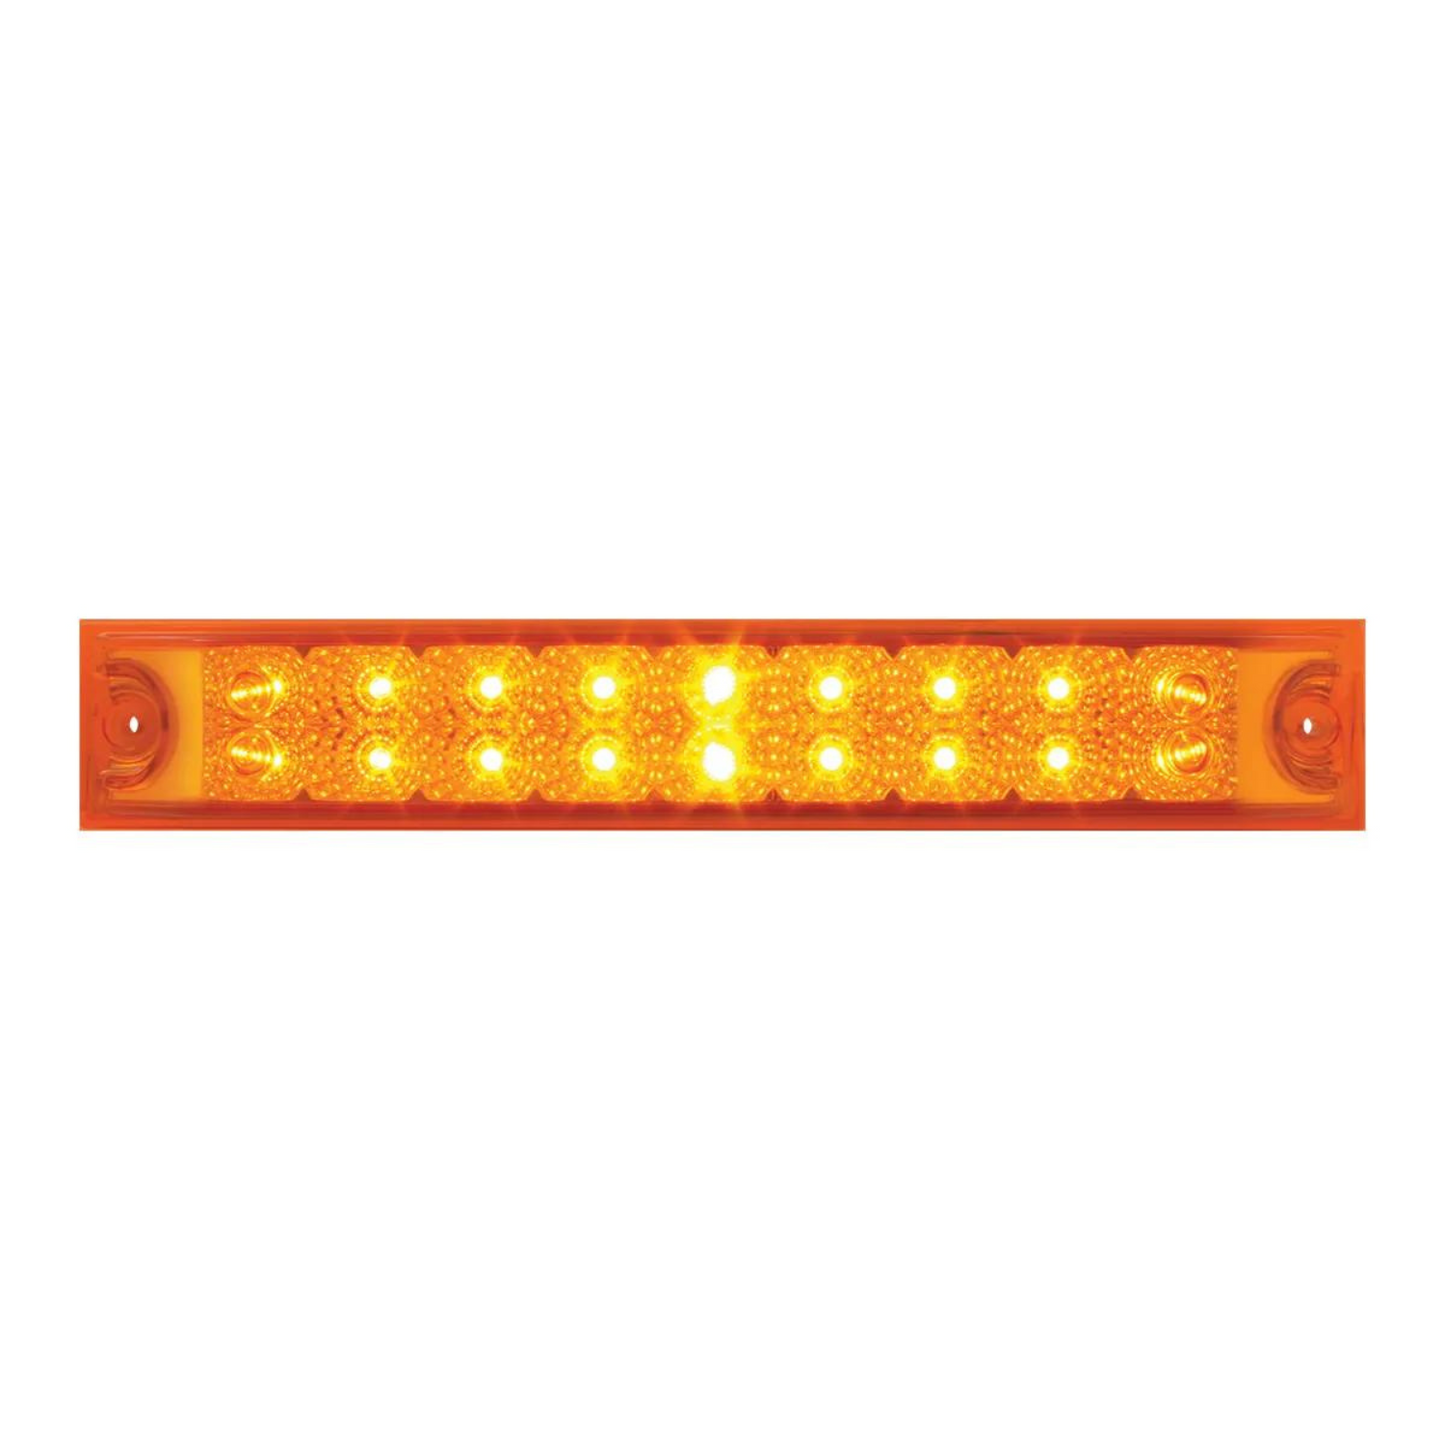 Spyder 18 LED Light Bar in Amber